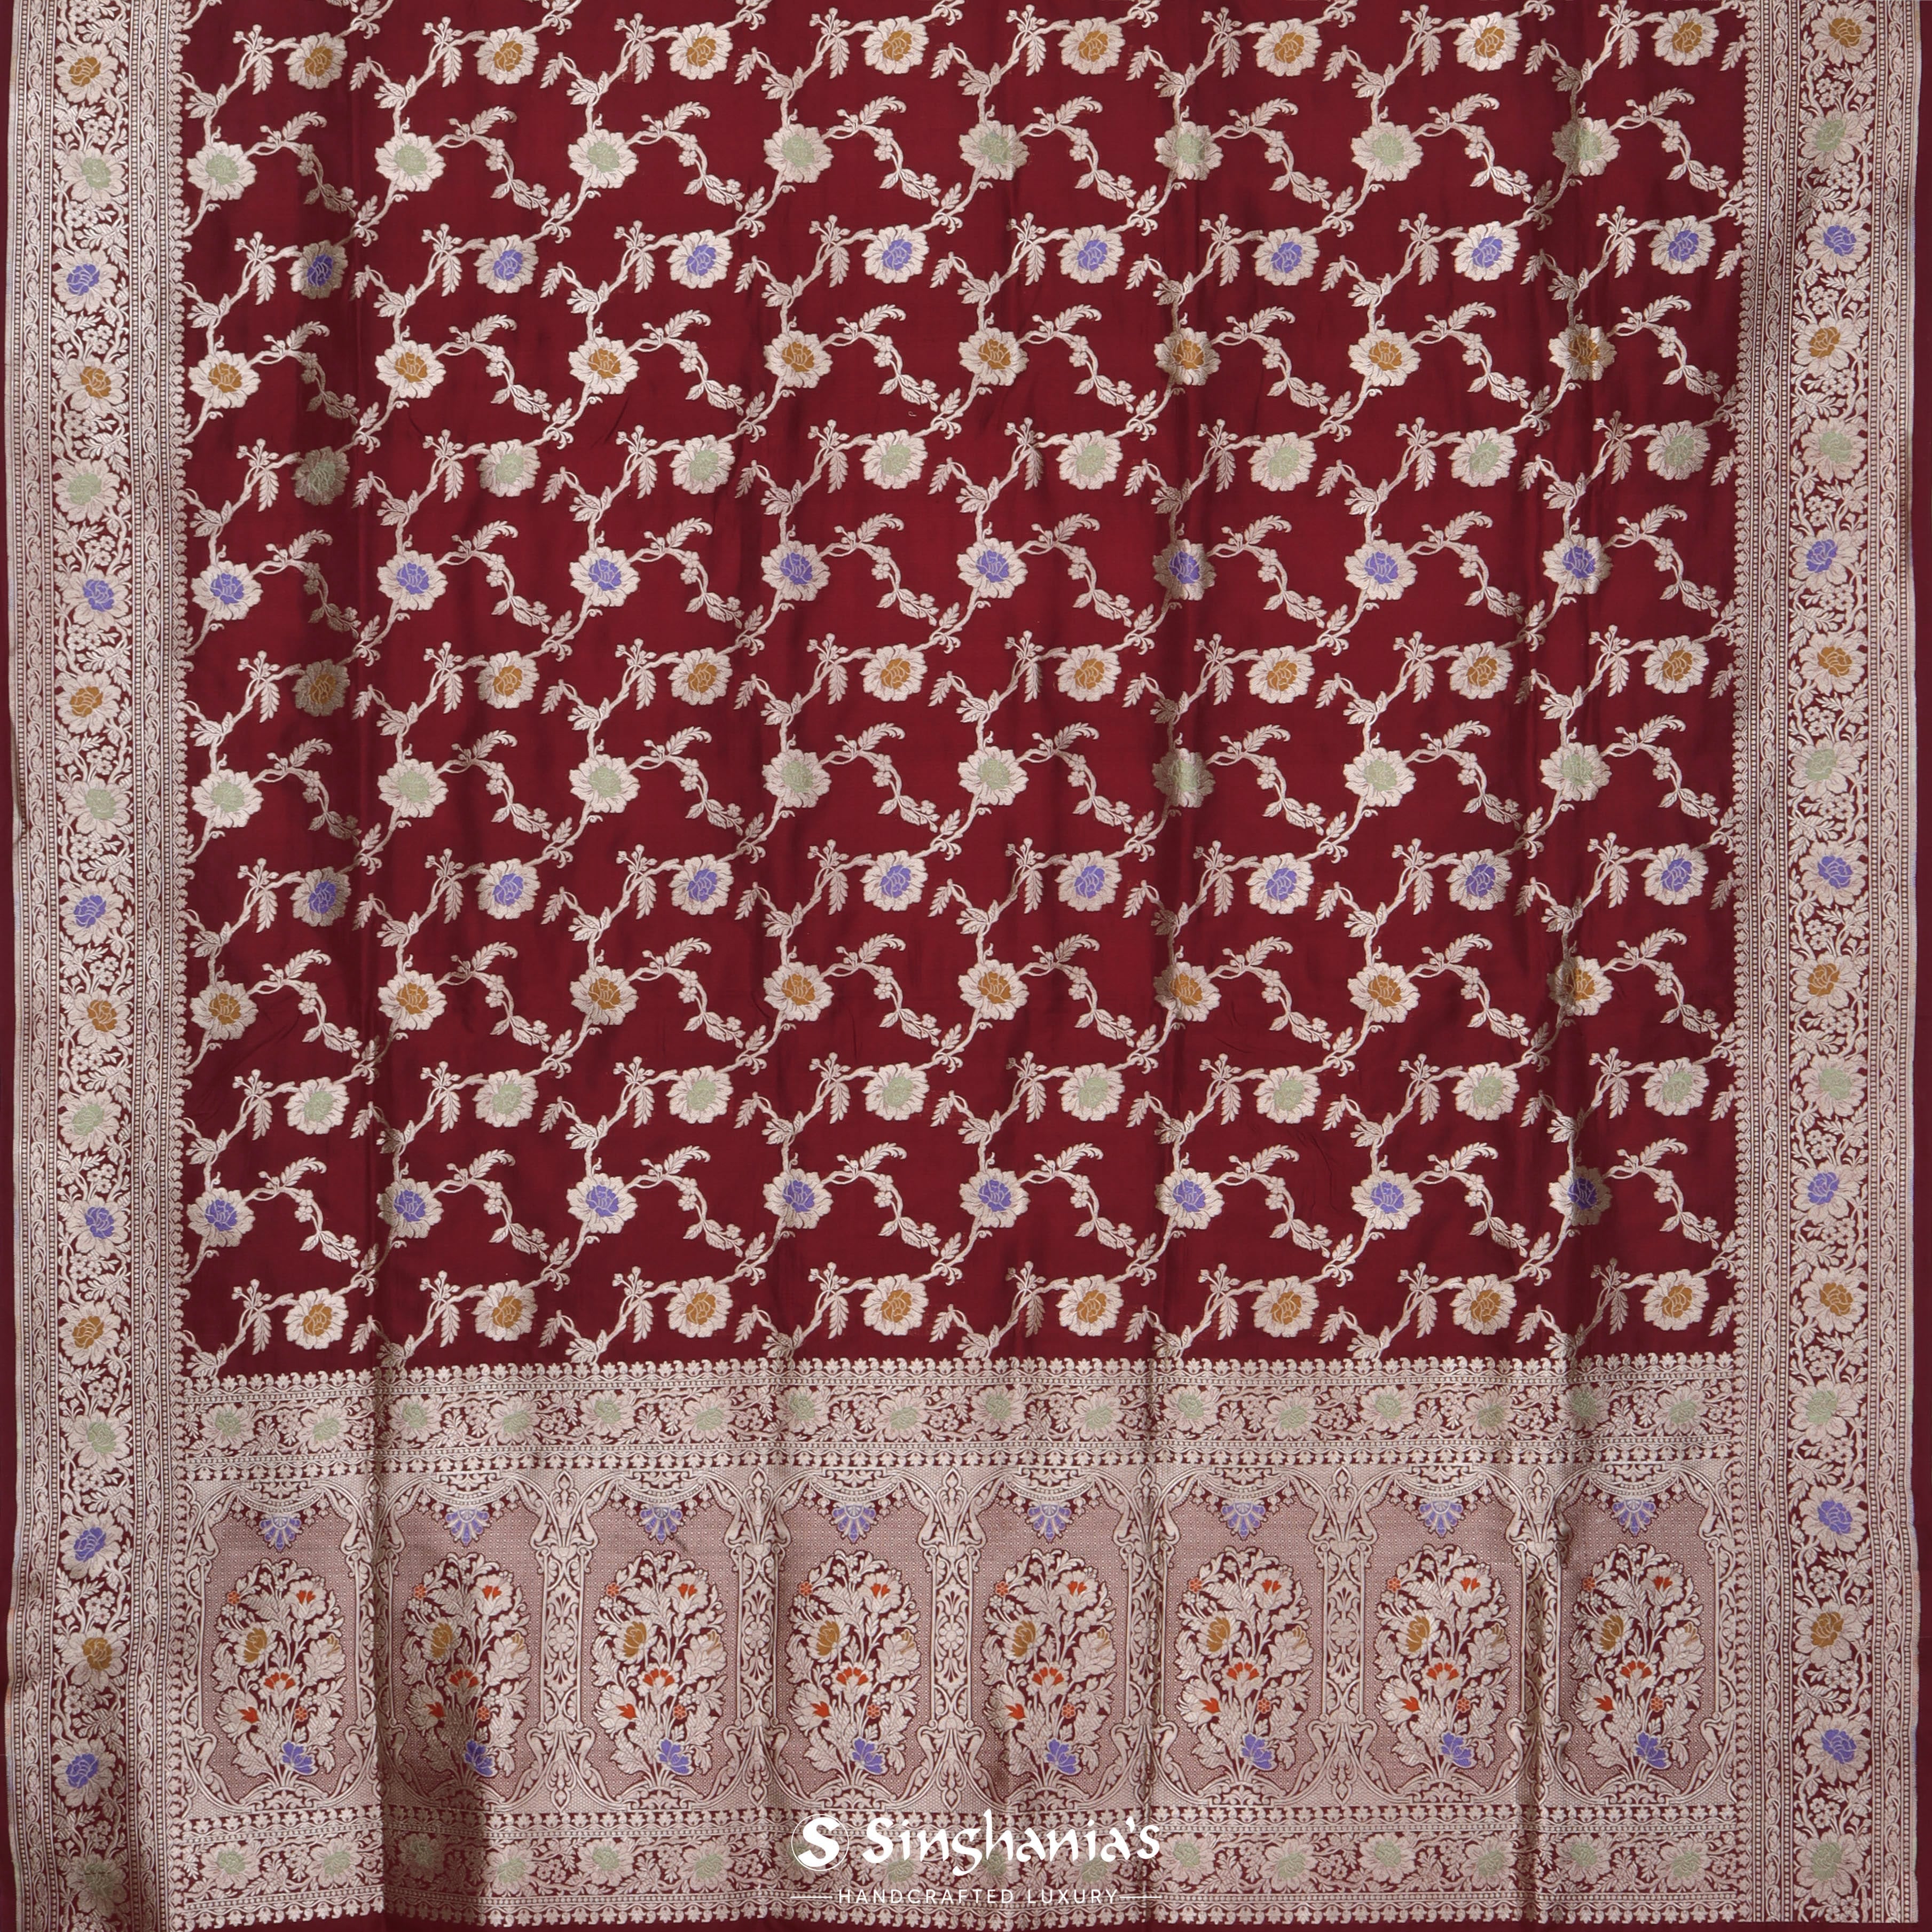 Mahogany Red Banarasi Silk Saree With Floral Jaal Pattern